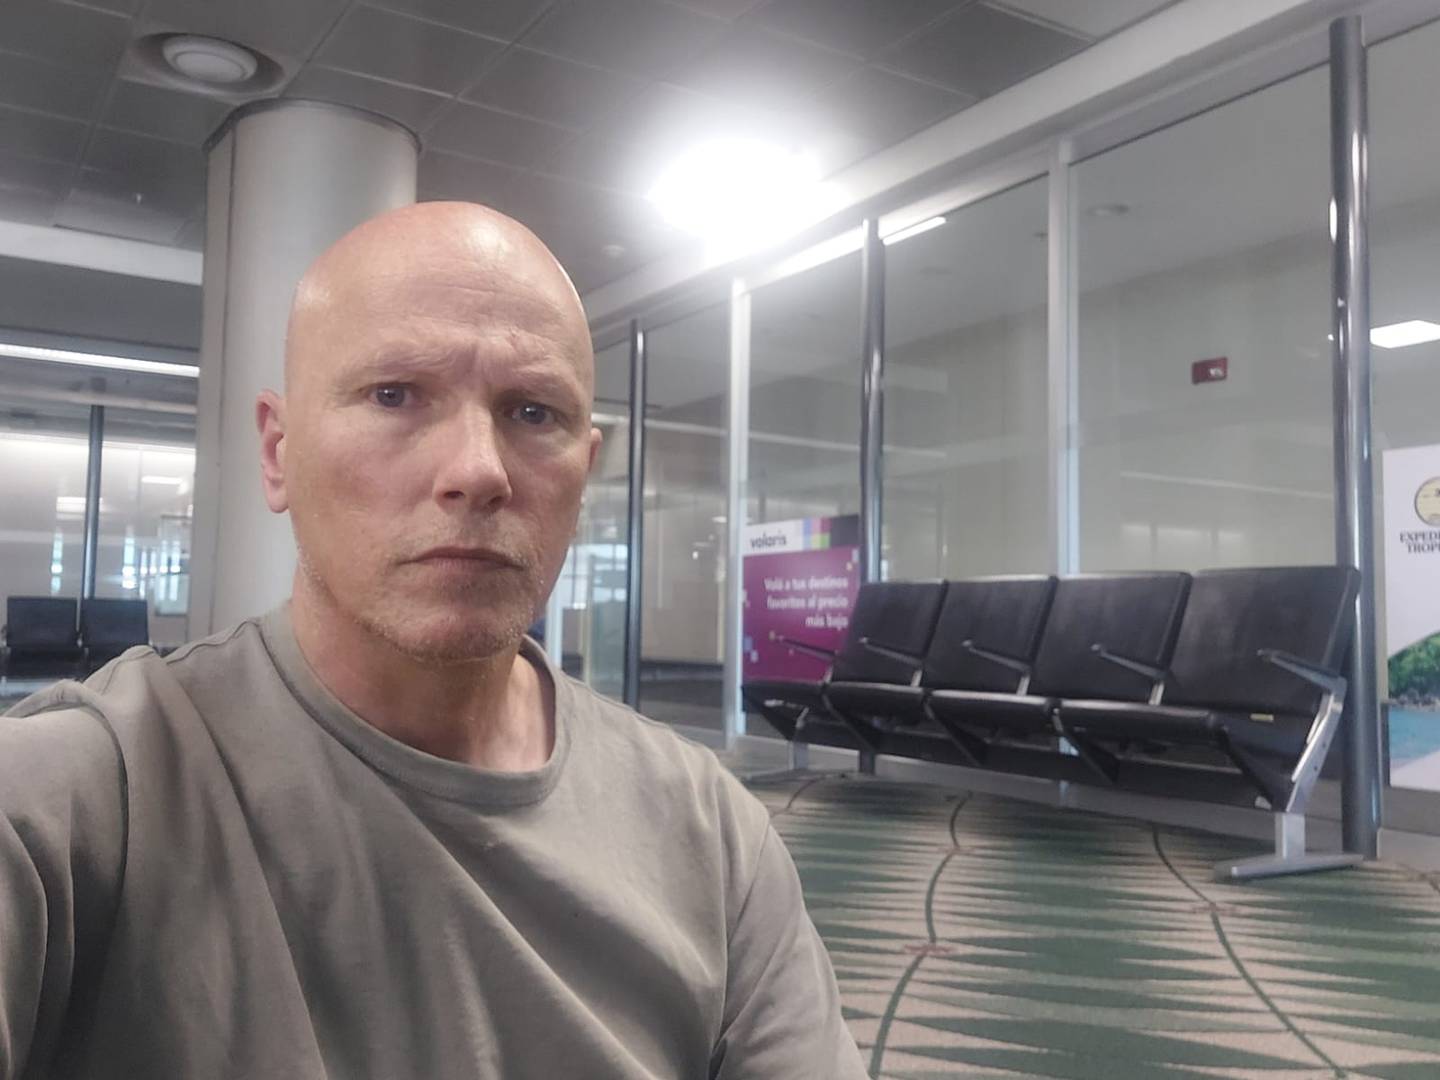 Karl Penhaul, periodista británico independiente, permanece aislado en una sala del aeropuerto Juan Santamaría, luego que le negaran el ingreso al país. Foto: Cortesía Karl Penhaul para LN